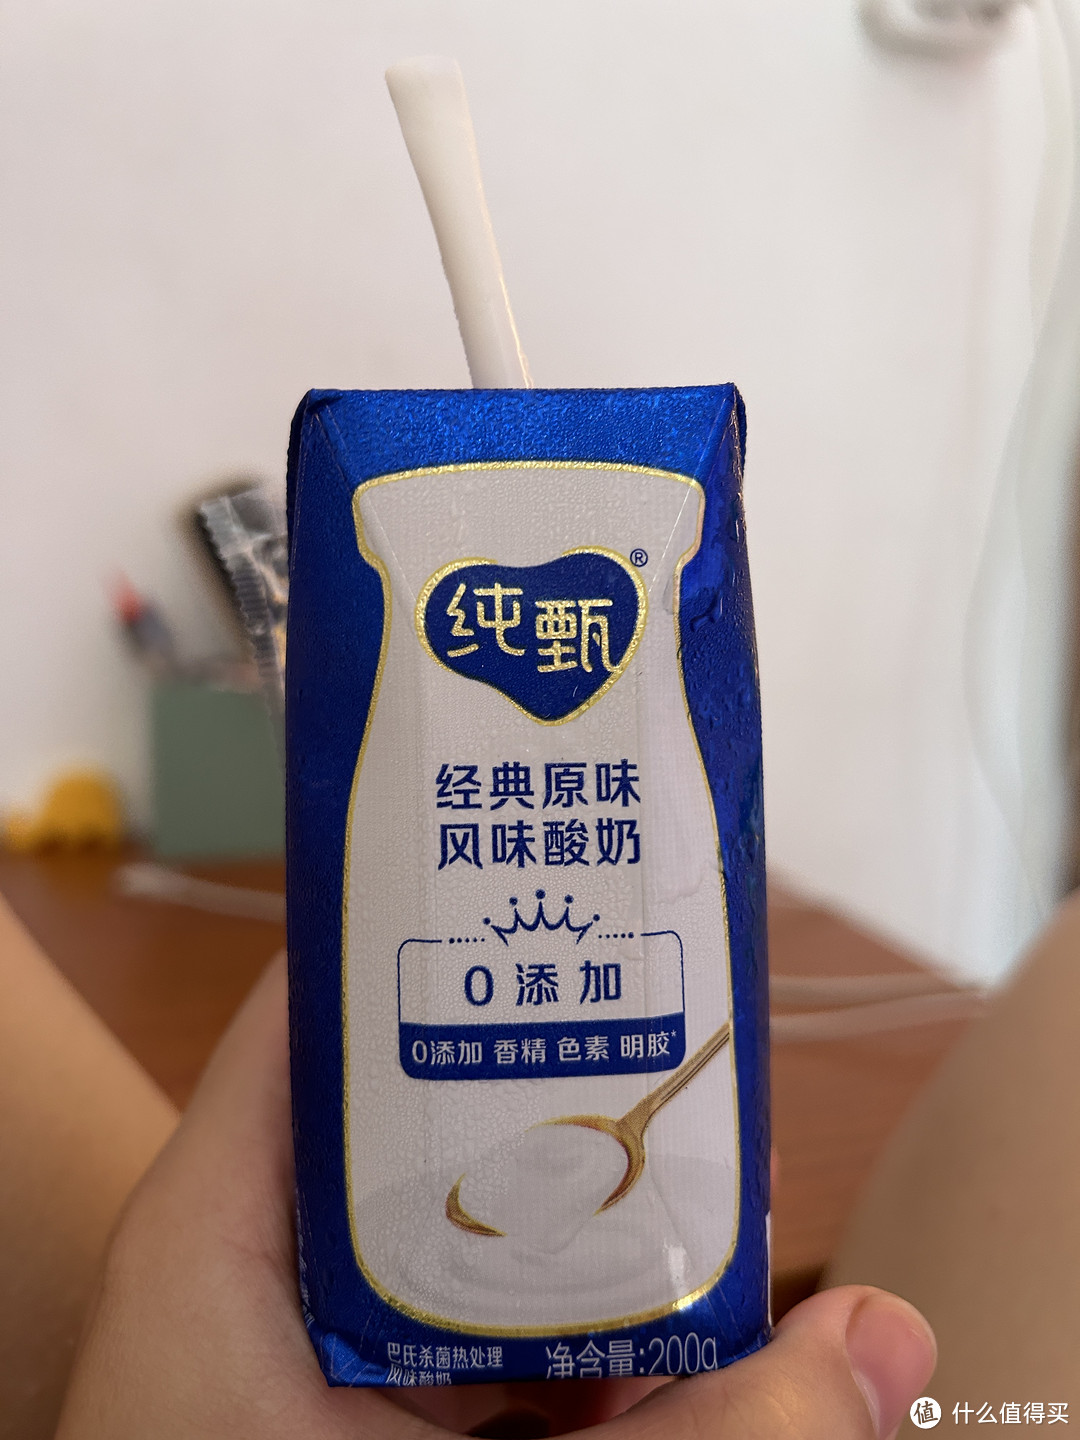 酸奶是一种非常健康且受欢迎的乳制品